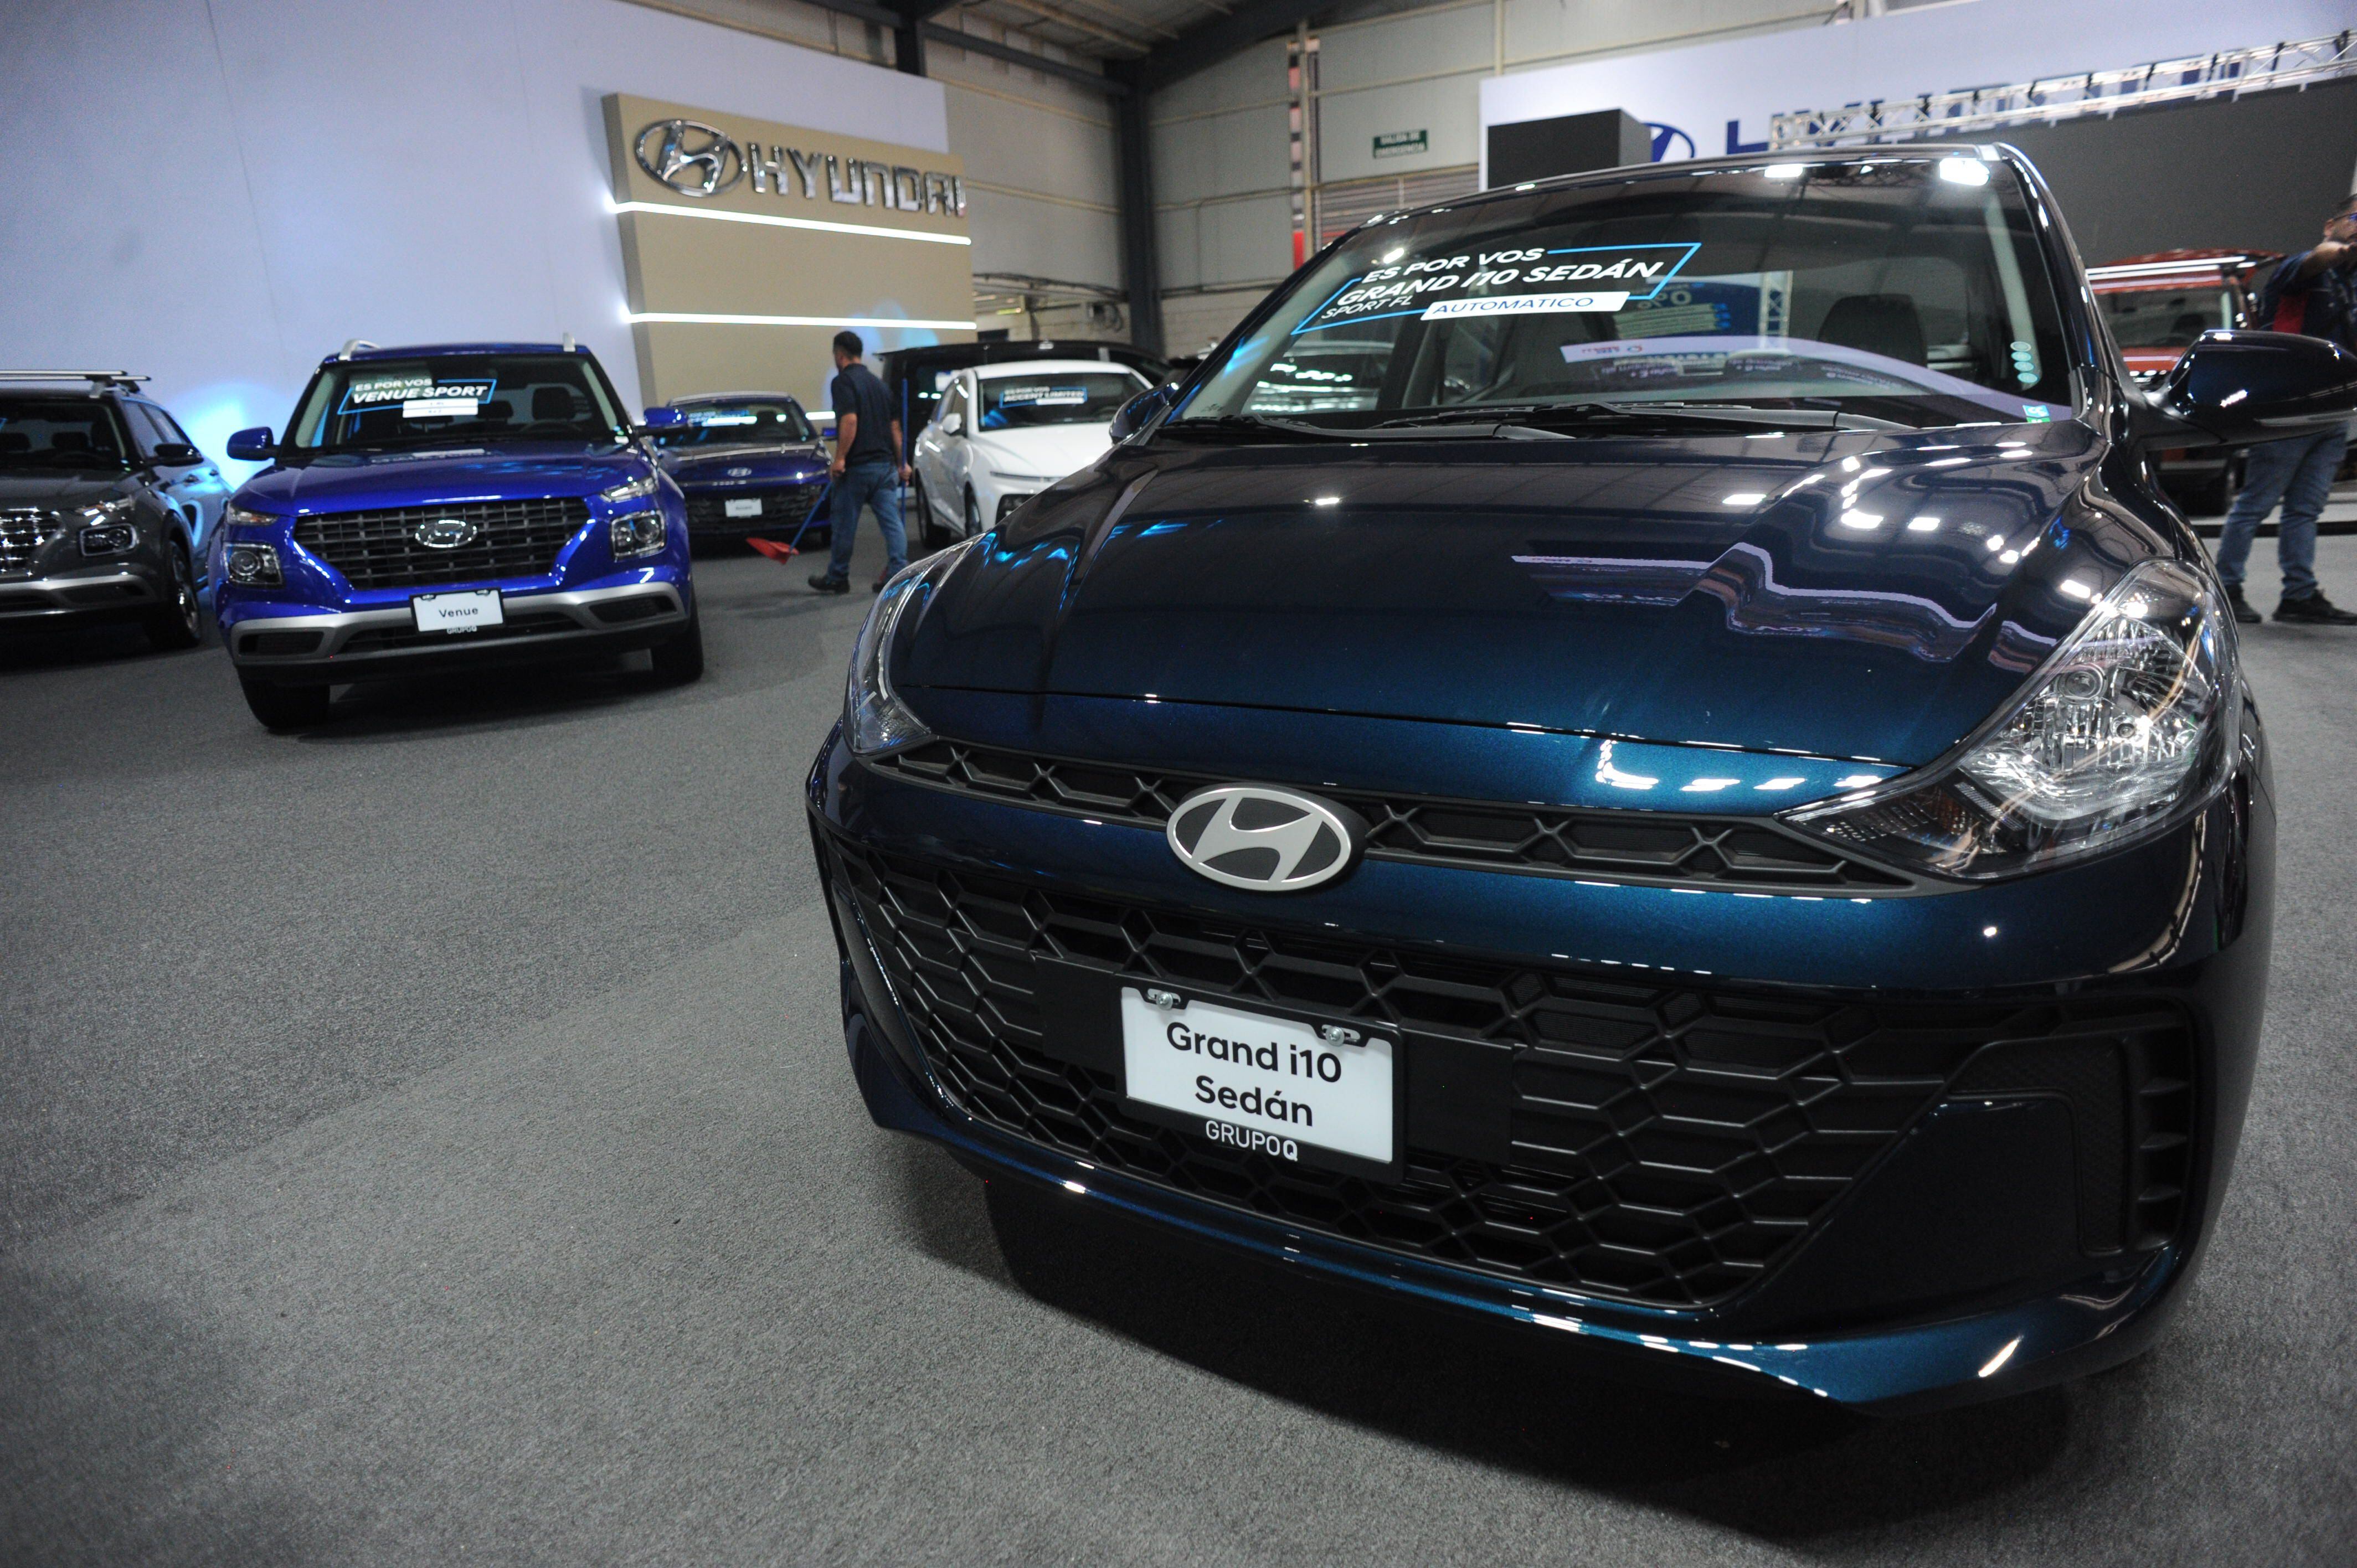 El Hyundai Grand i10, en su versión sedán, se ofrece desde los $21.990 en la Expomóvil.